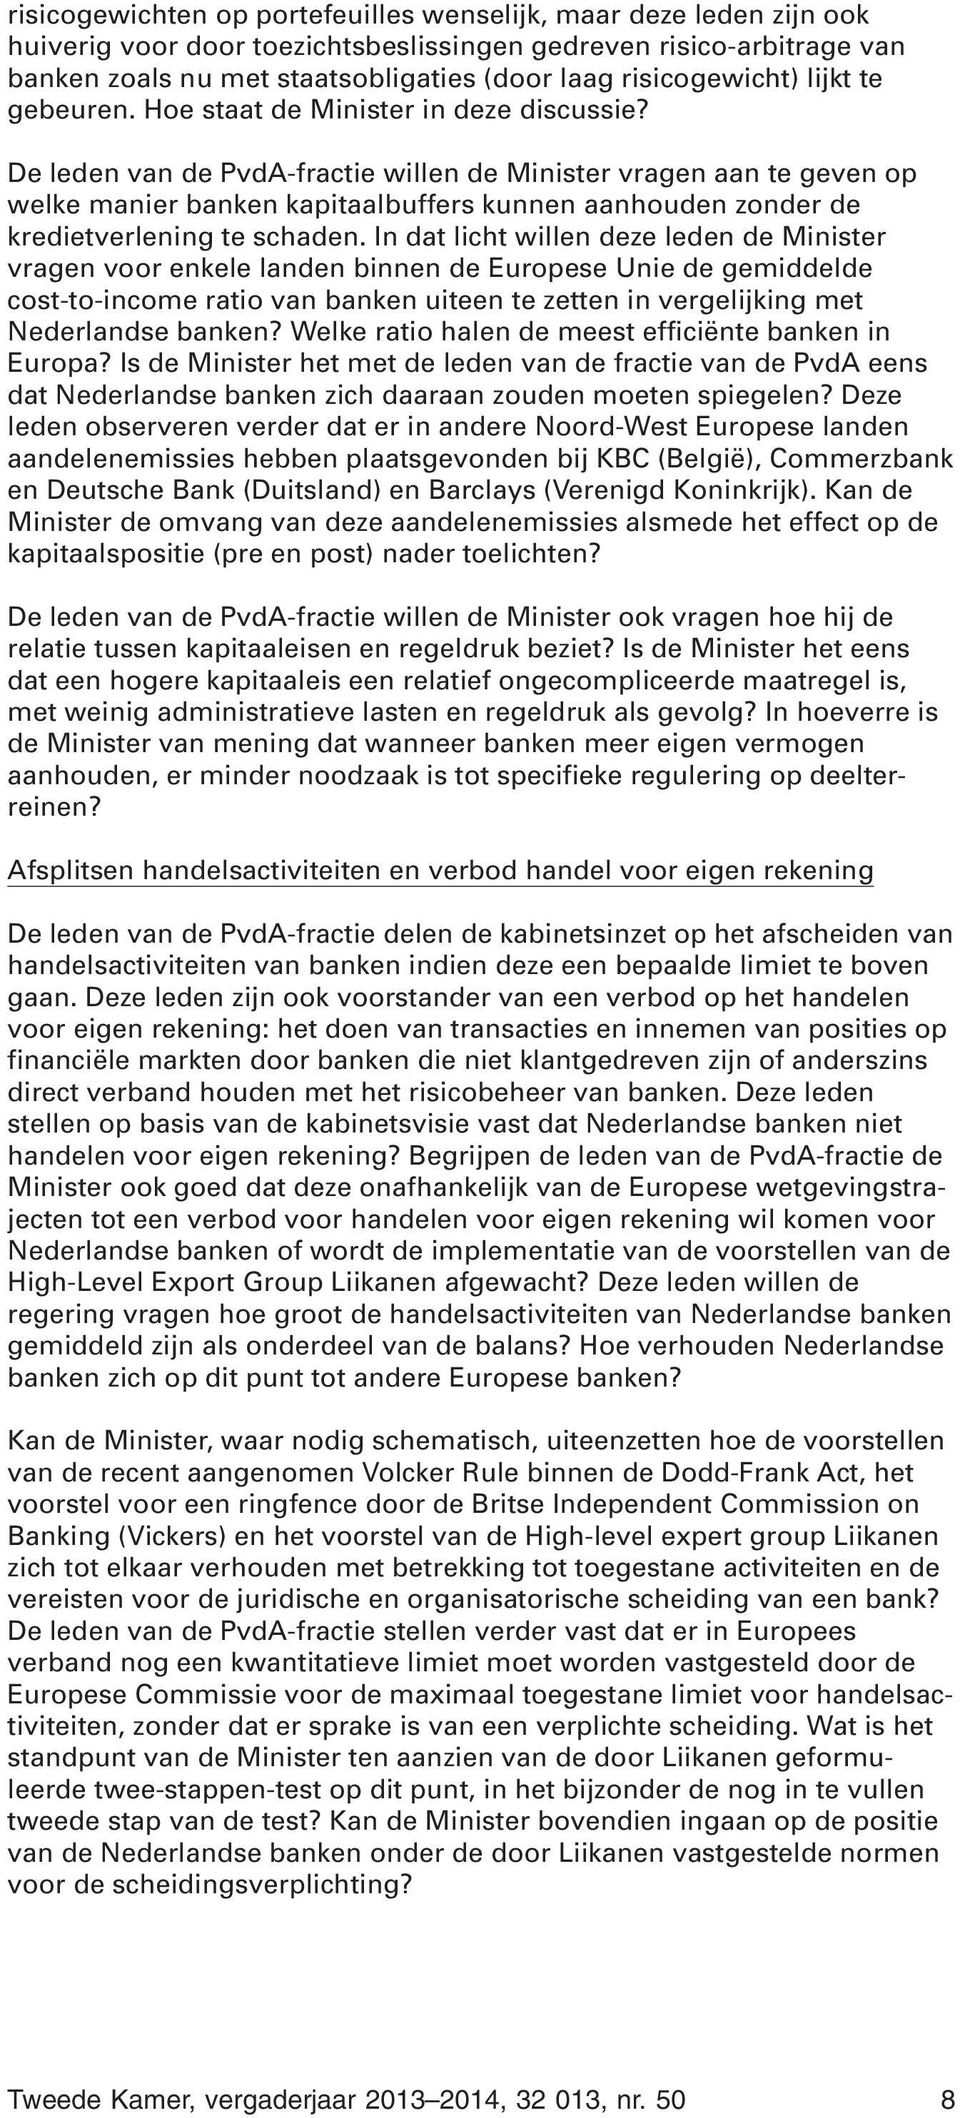 De leden van de PvdA-fractie willen de Minister vragen aan te geven op welke manier banken kapitaalbuffers kunnen aanhouden zonder de kredietverlening te schaden.